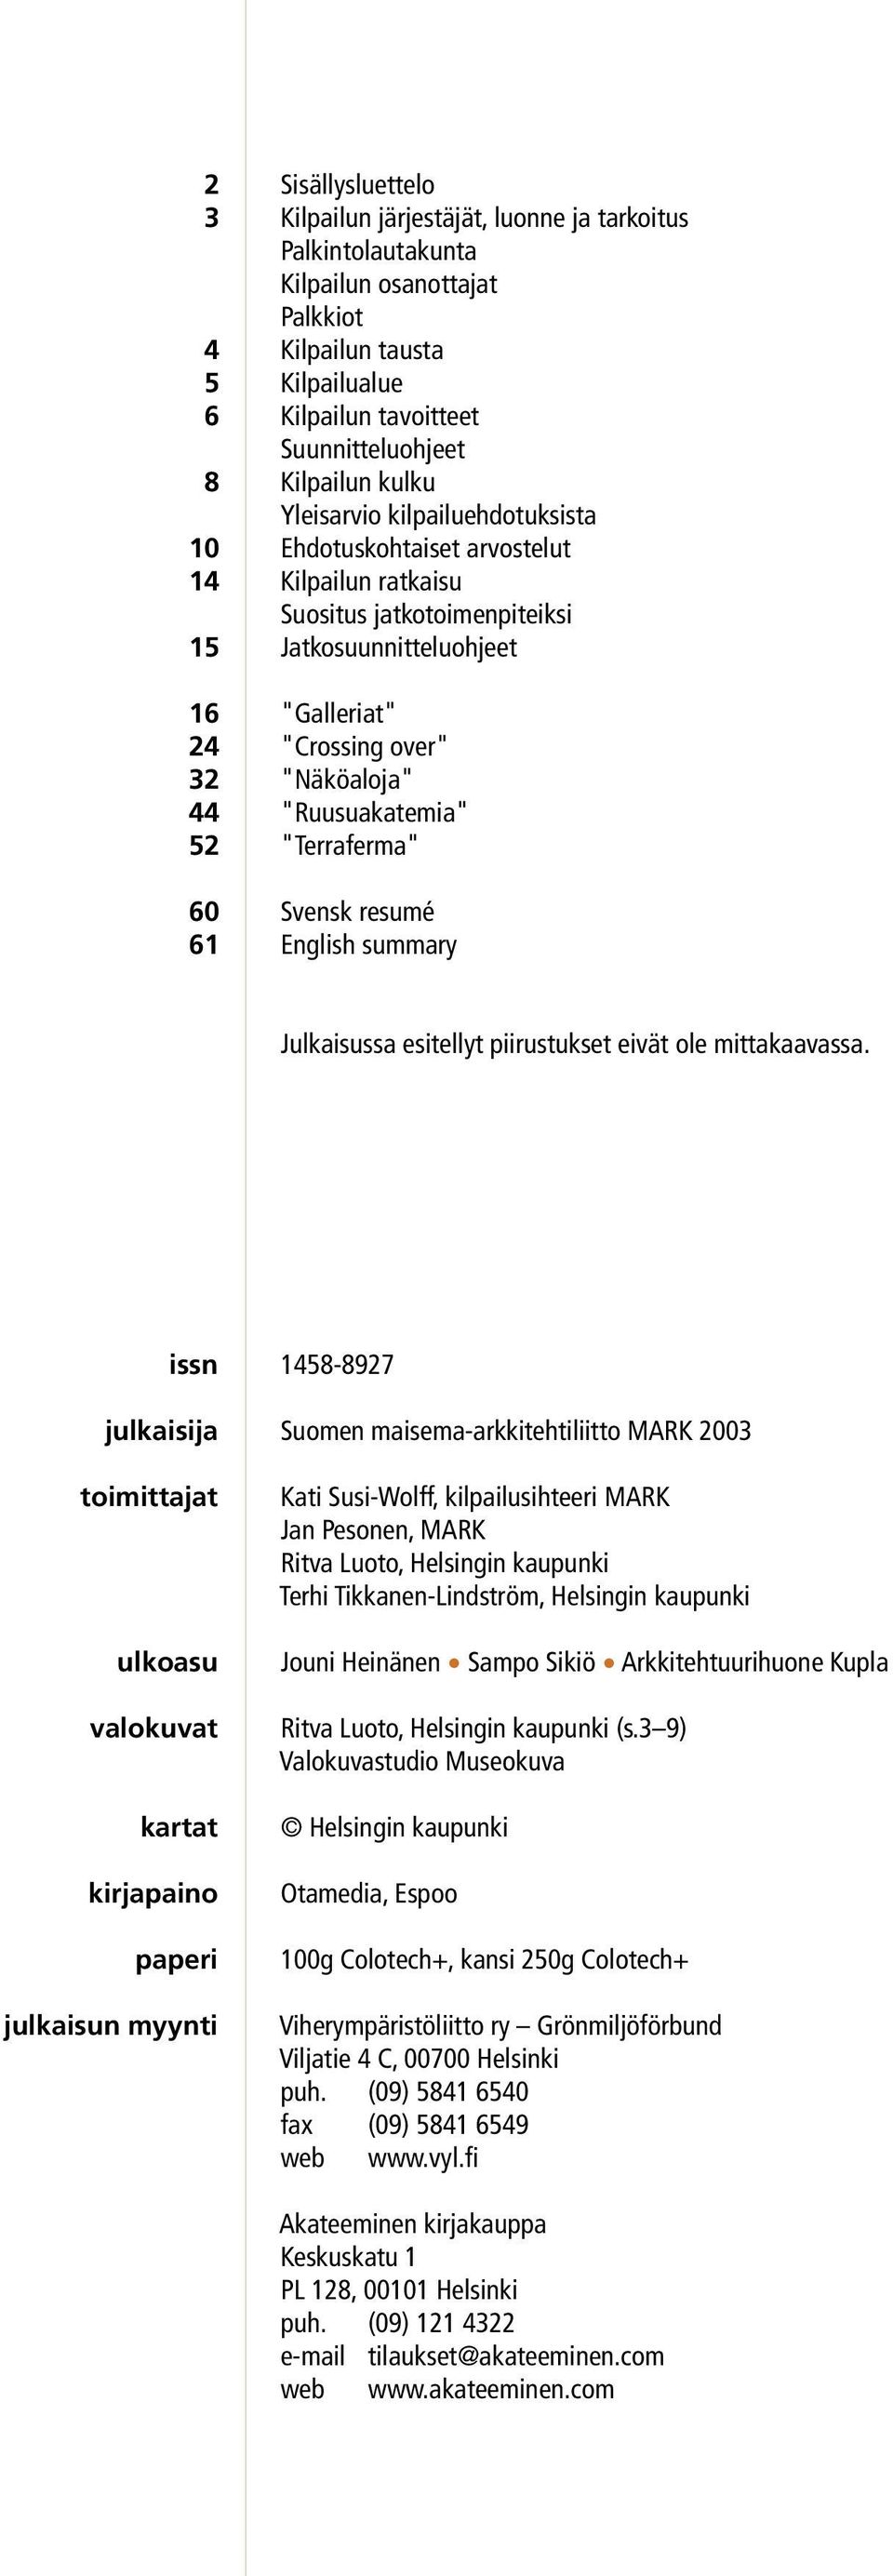 "Näköaloja" 44 "Ruusuakatemia" 52 "Terraferma" 60 Svensk resumé 61 English summary Julkaisussa esitellyt piirustukset eivät ole mittakaavassa.